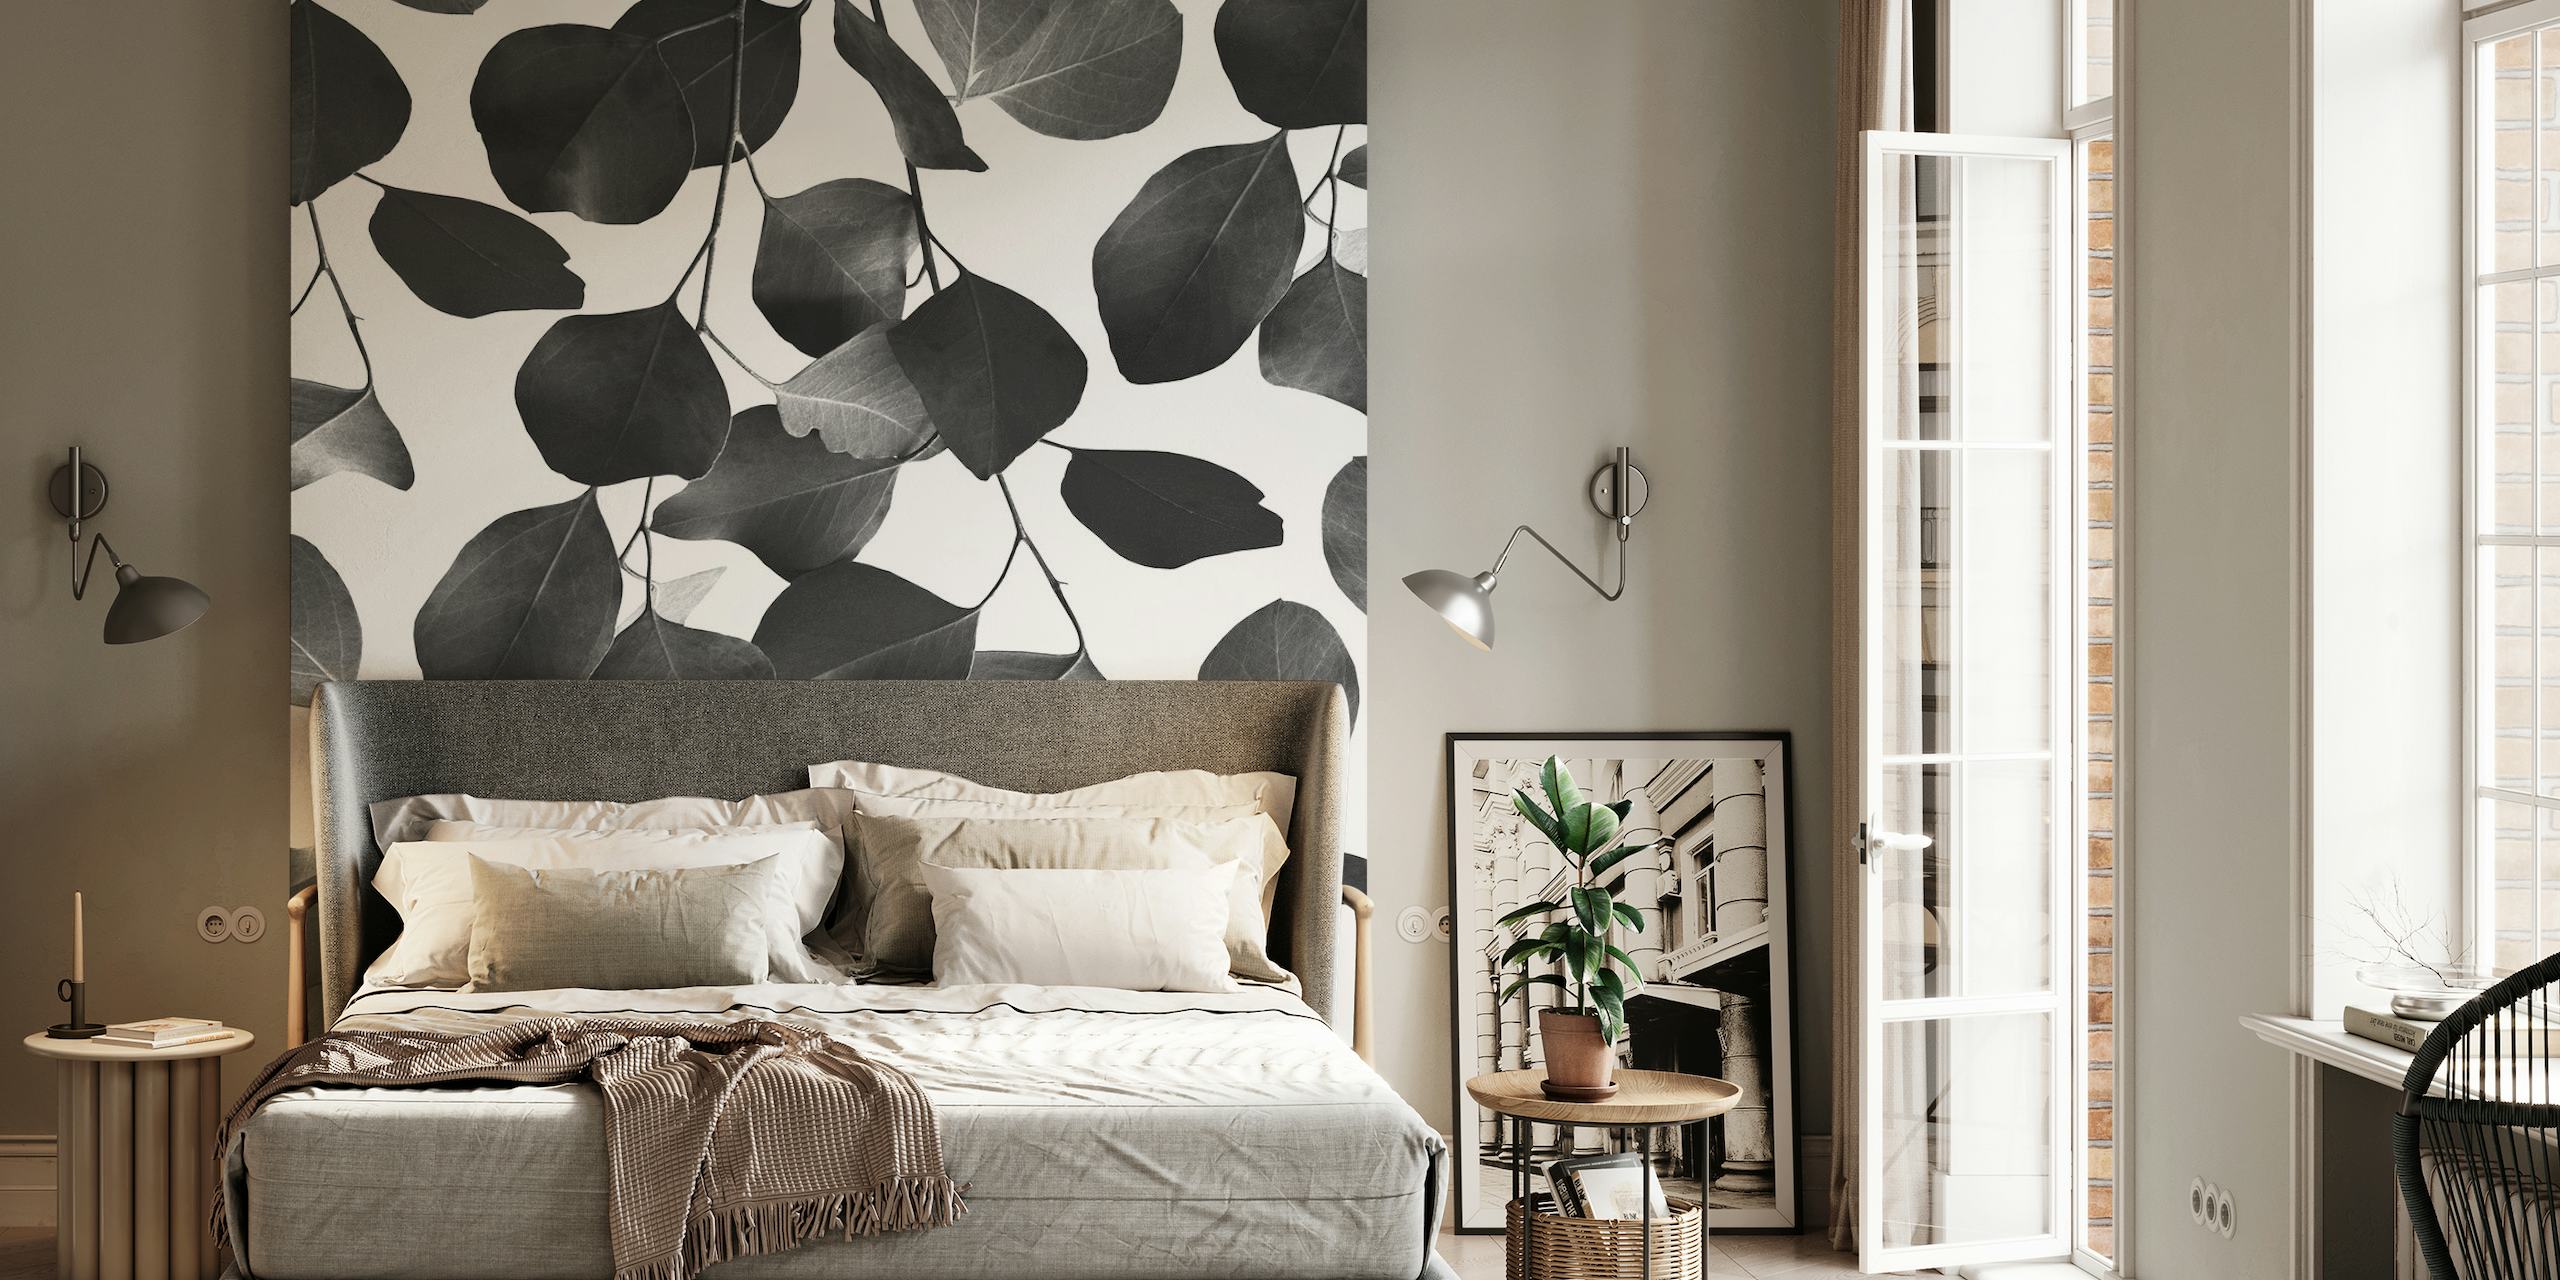 Monochrome eucalyptusbladeren muurschildering voor een rustig, botanisch decor